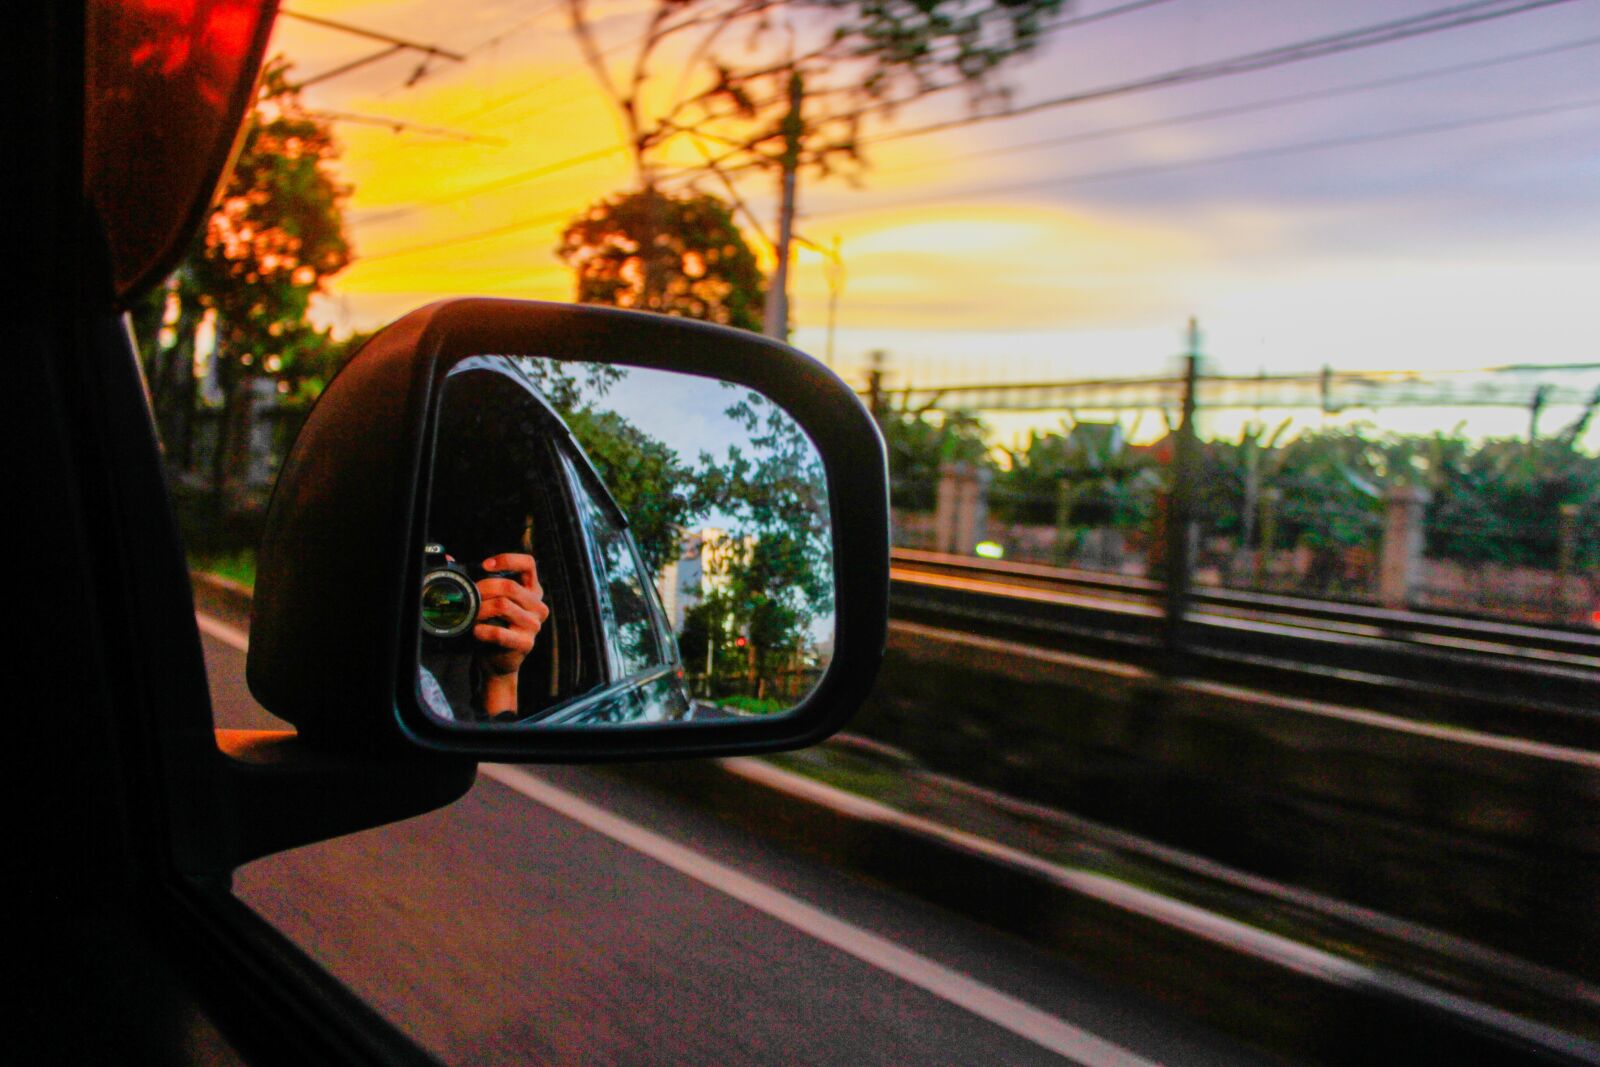 Canon EOS 60D sample photo. Mirror, dusk, sunset car photography